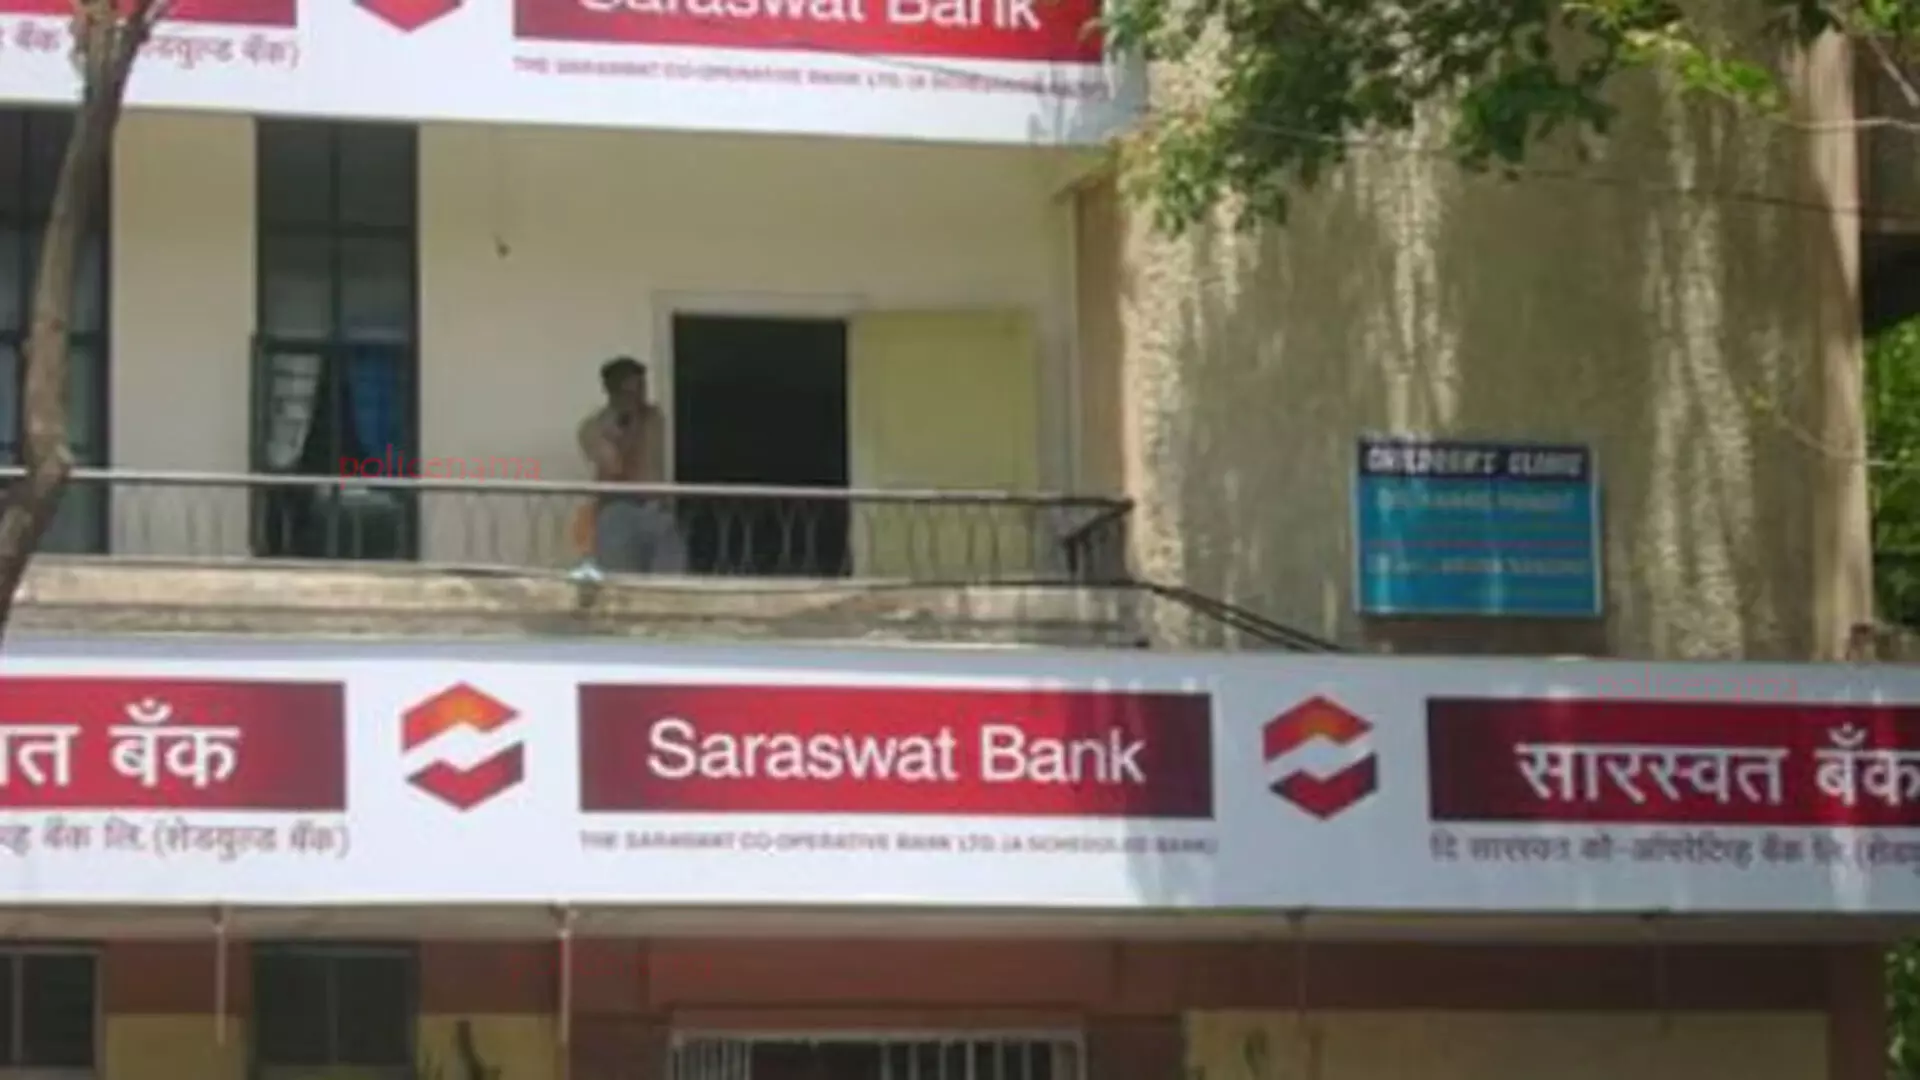 Mumbai: जाली दस्तावेजों के मामले में सत्र न्यायालय ने सारस्वत बैंक को बरी किया